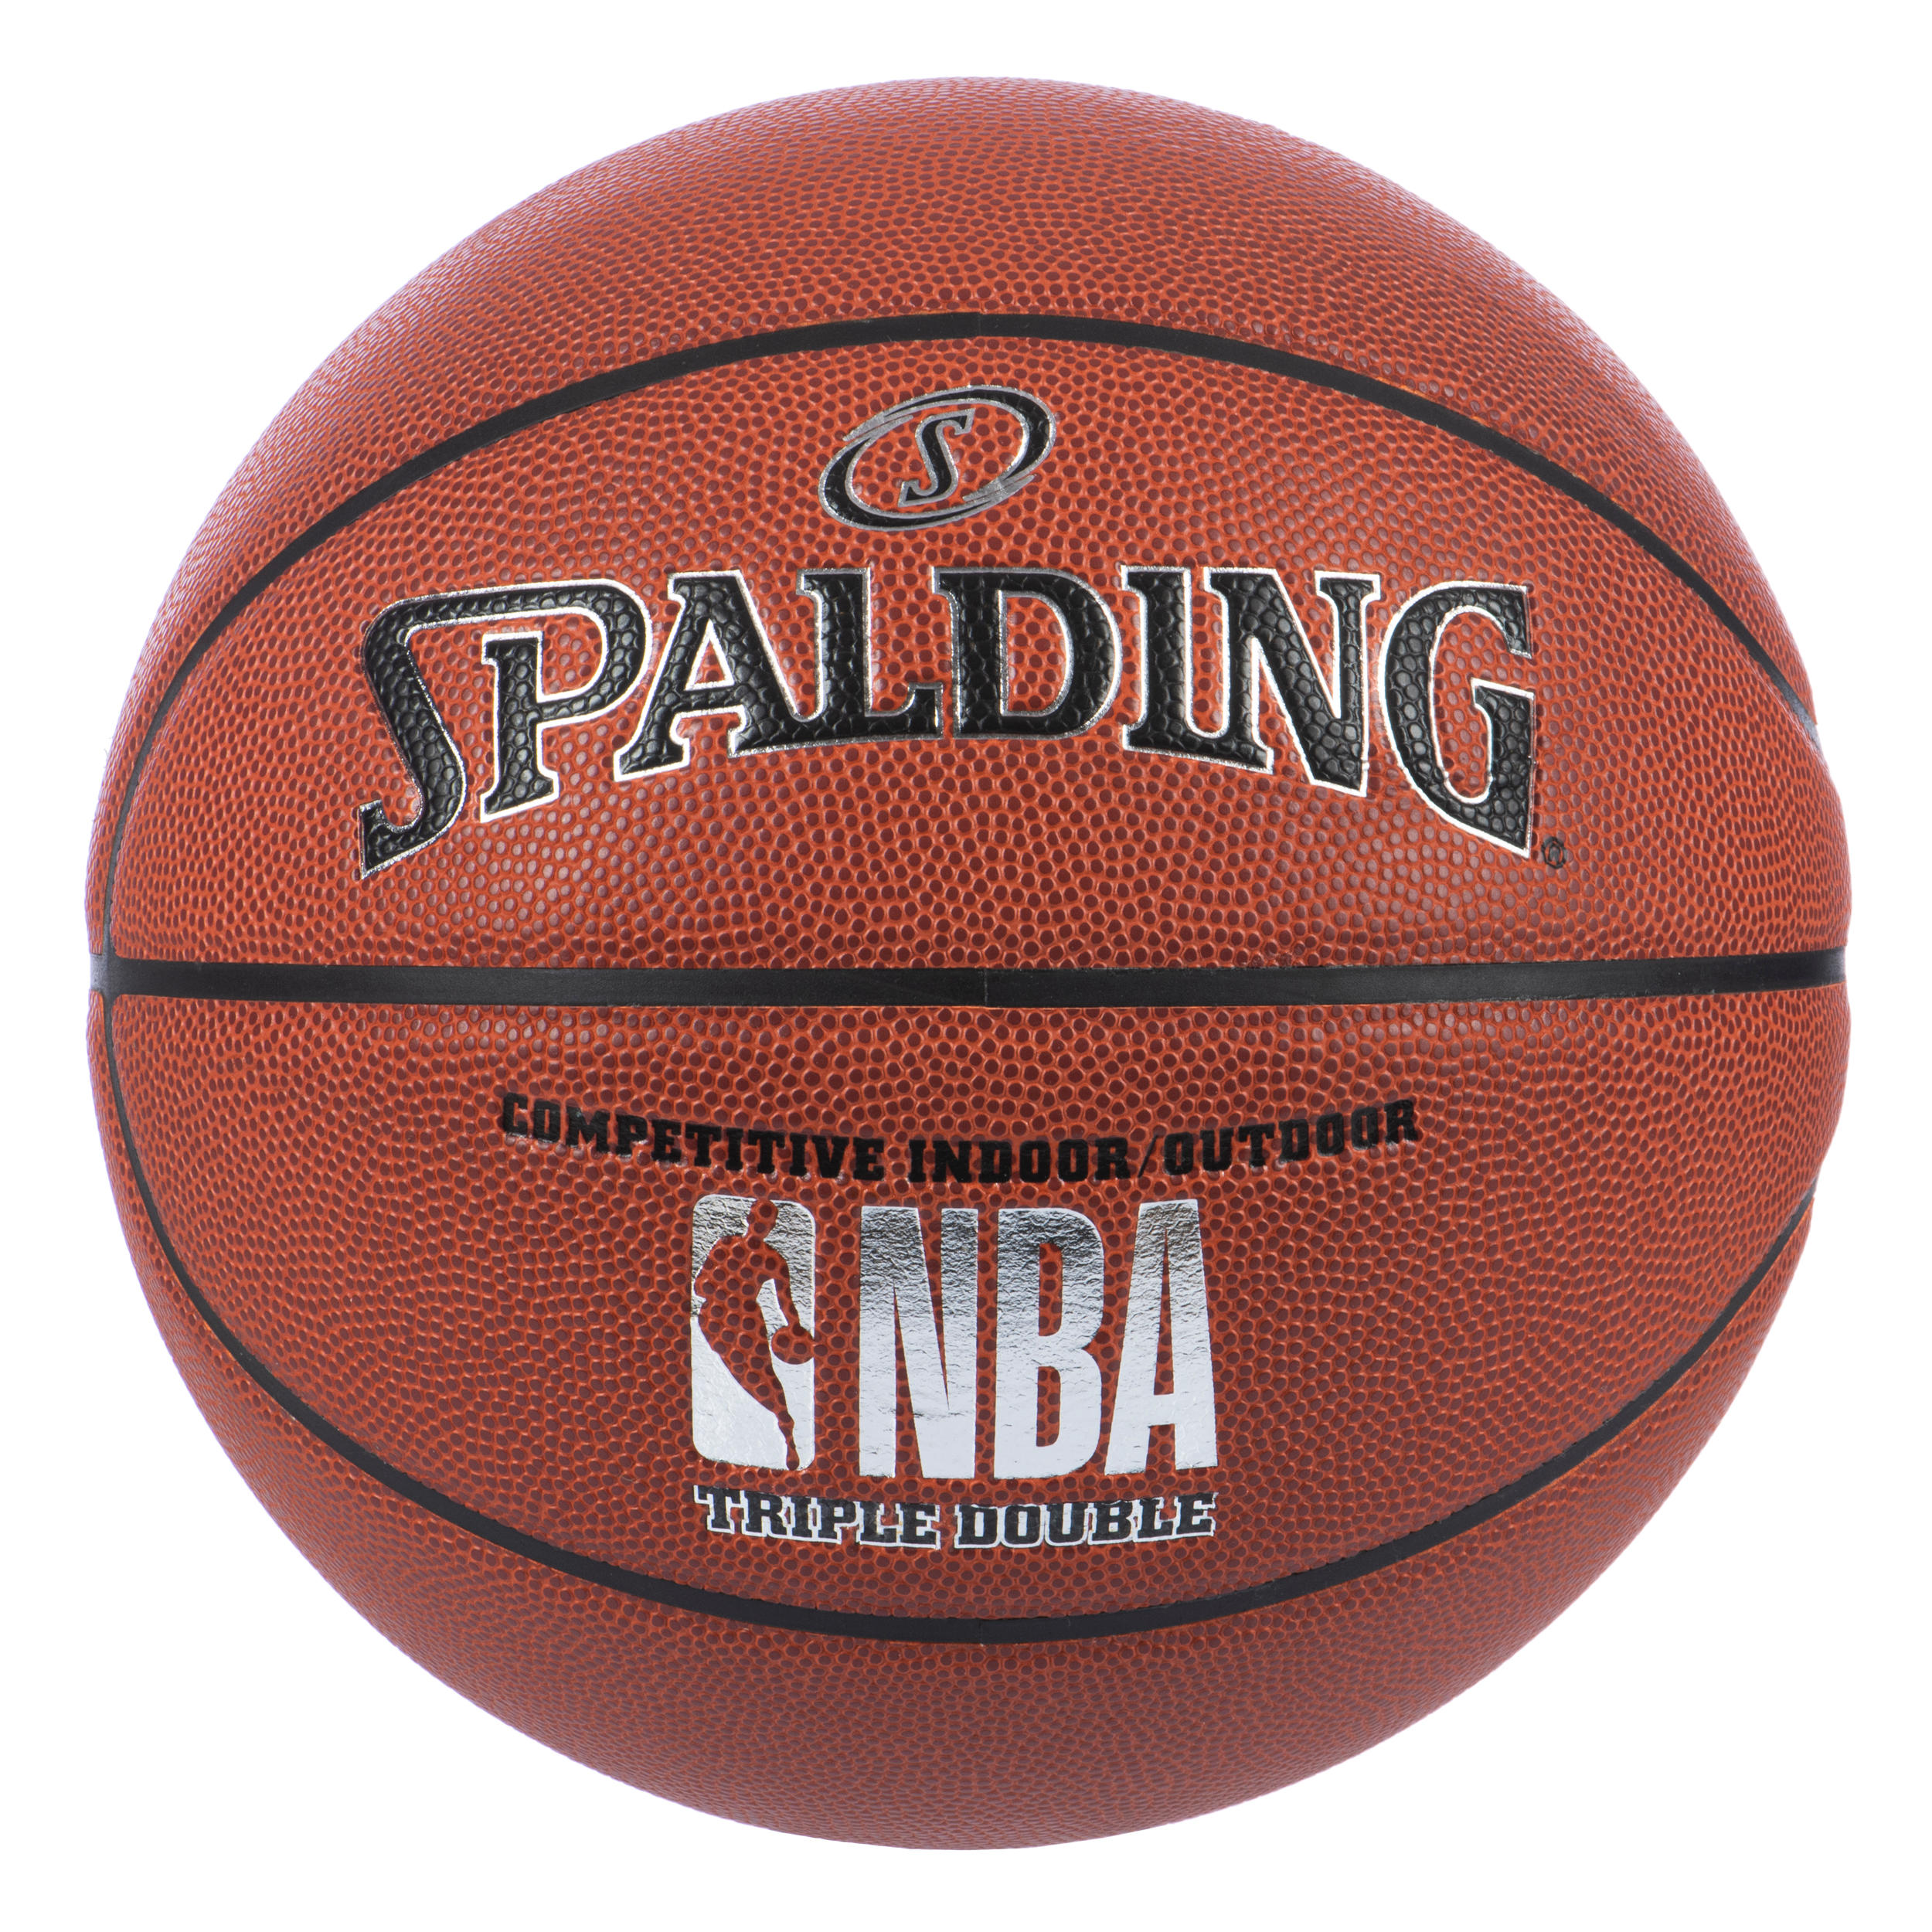 Ballon de Basket SPALDING TF50 OUTDOOR Touché et Contrôle améliorés Taille 3 à 7 